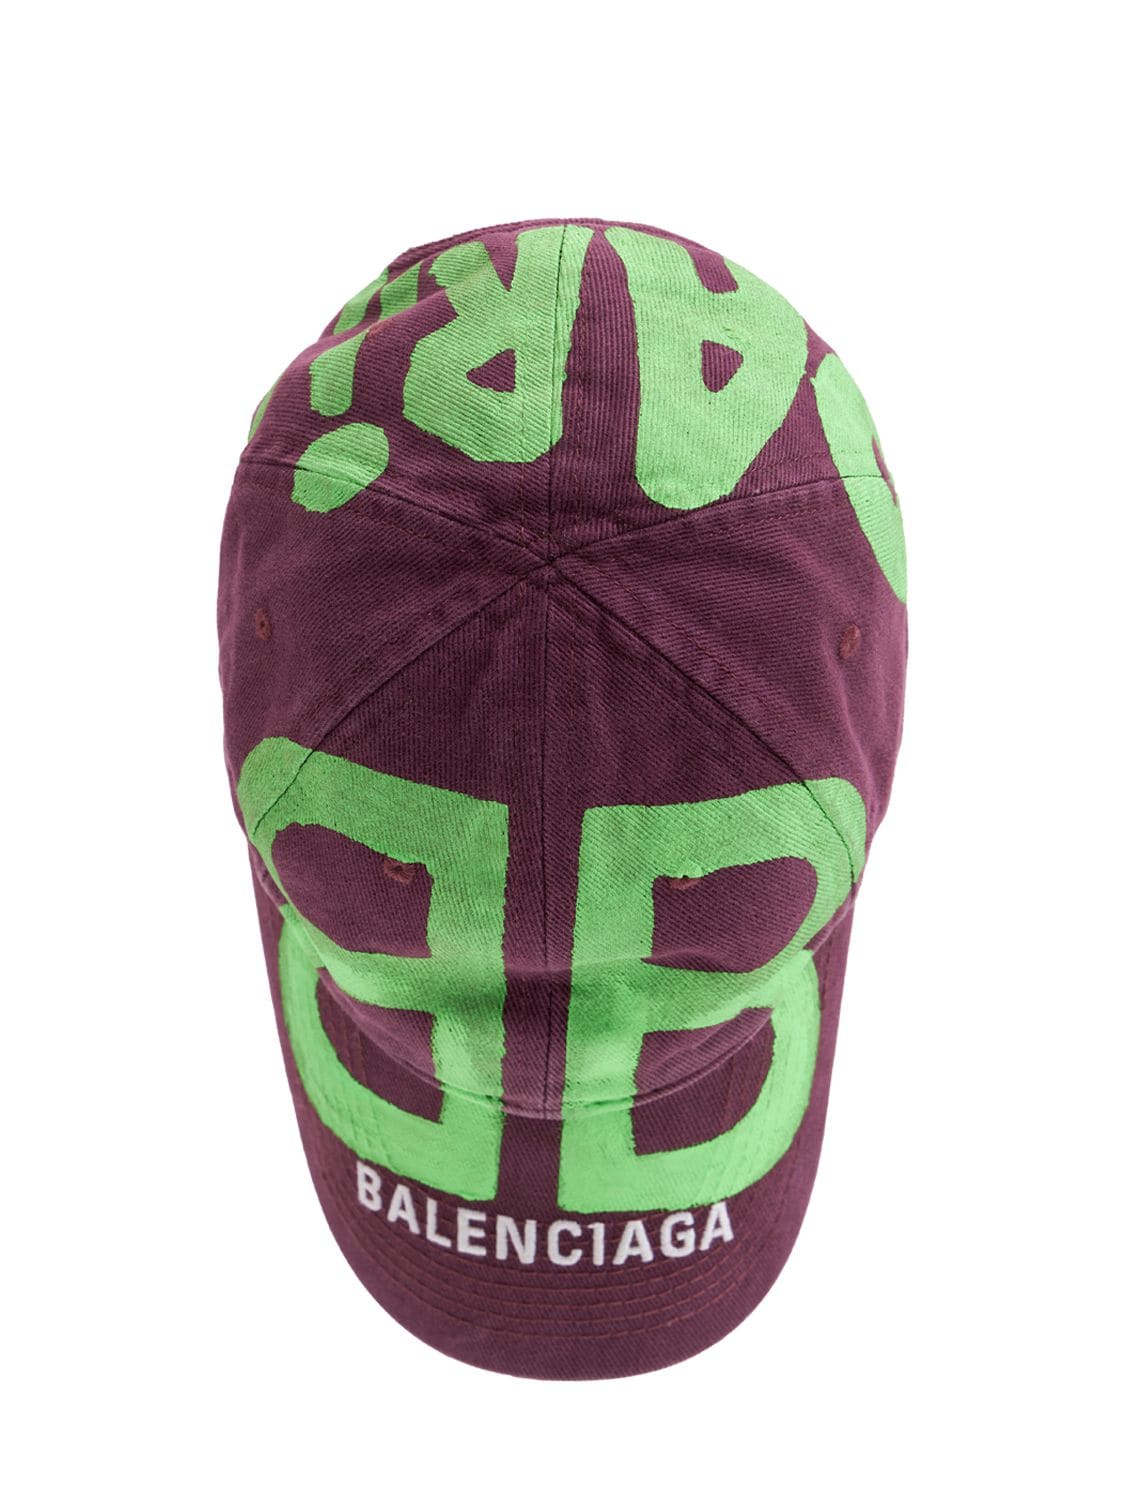 在庫が限られた入手困難カラーバレンシアガBB logo sprayed cap パープル グリーン